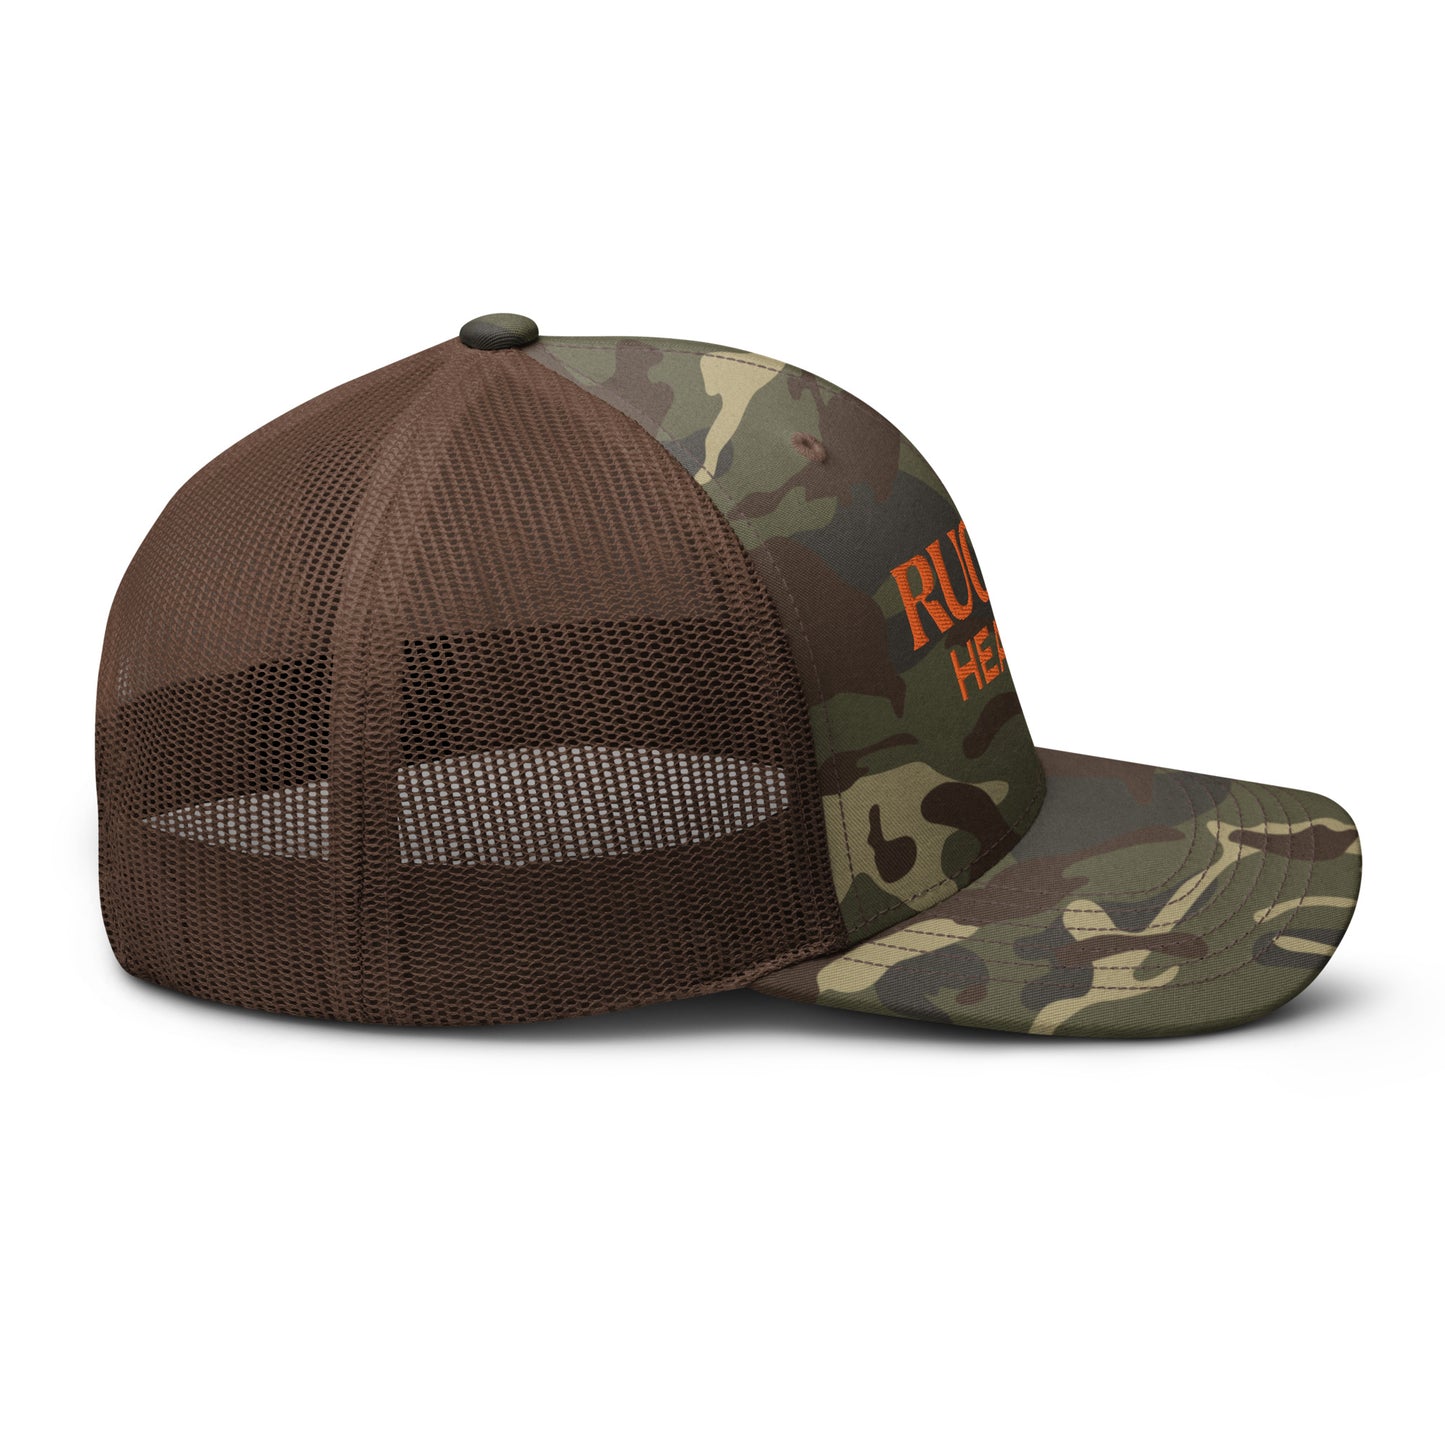 Camouflage trucker hat (orange) - Rugiet Health